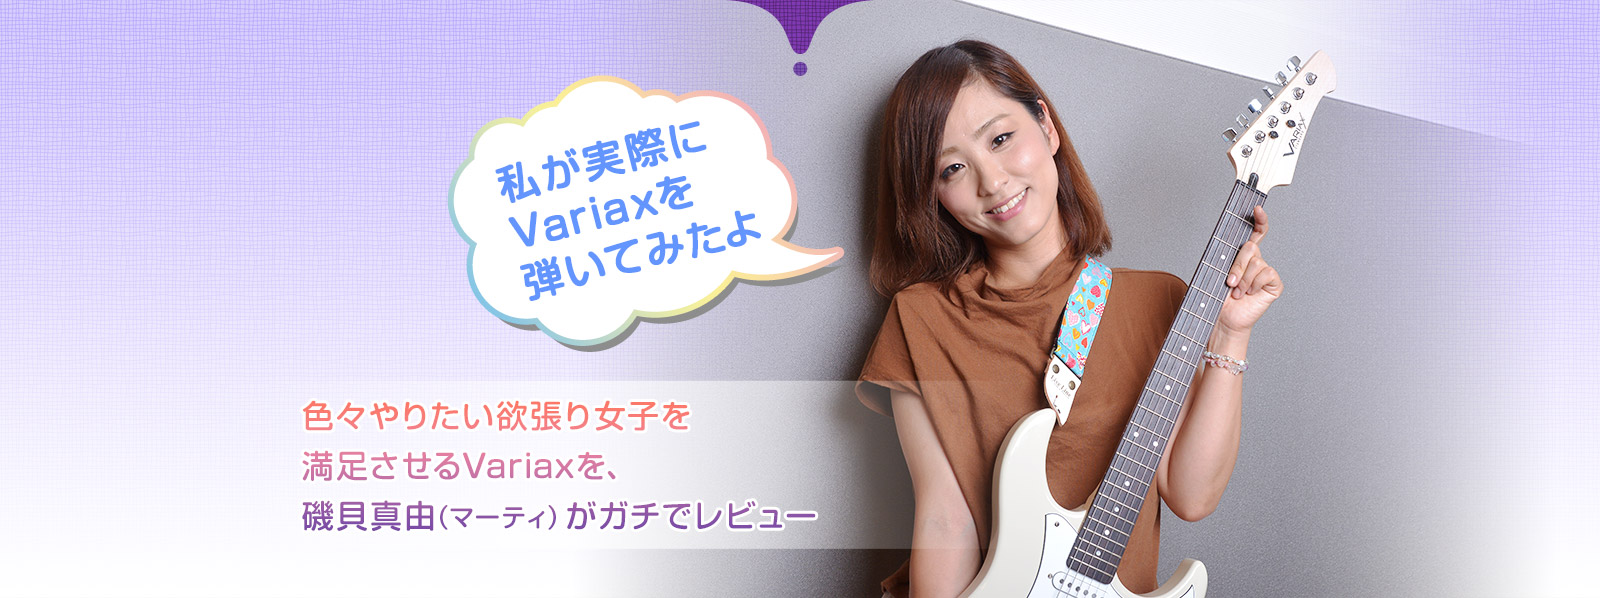 私が実際にvariaxを弾いてみたよ。色々やりたい欲張り女子を満足させるVariaxを、磯貝真由(マーティ)がガチでレビュー